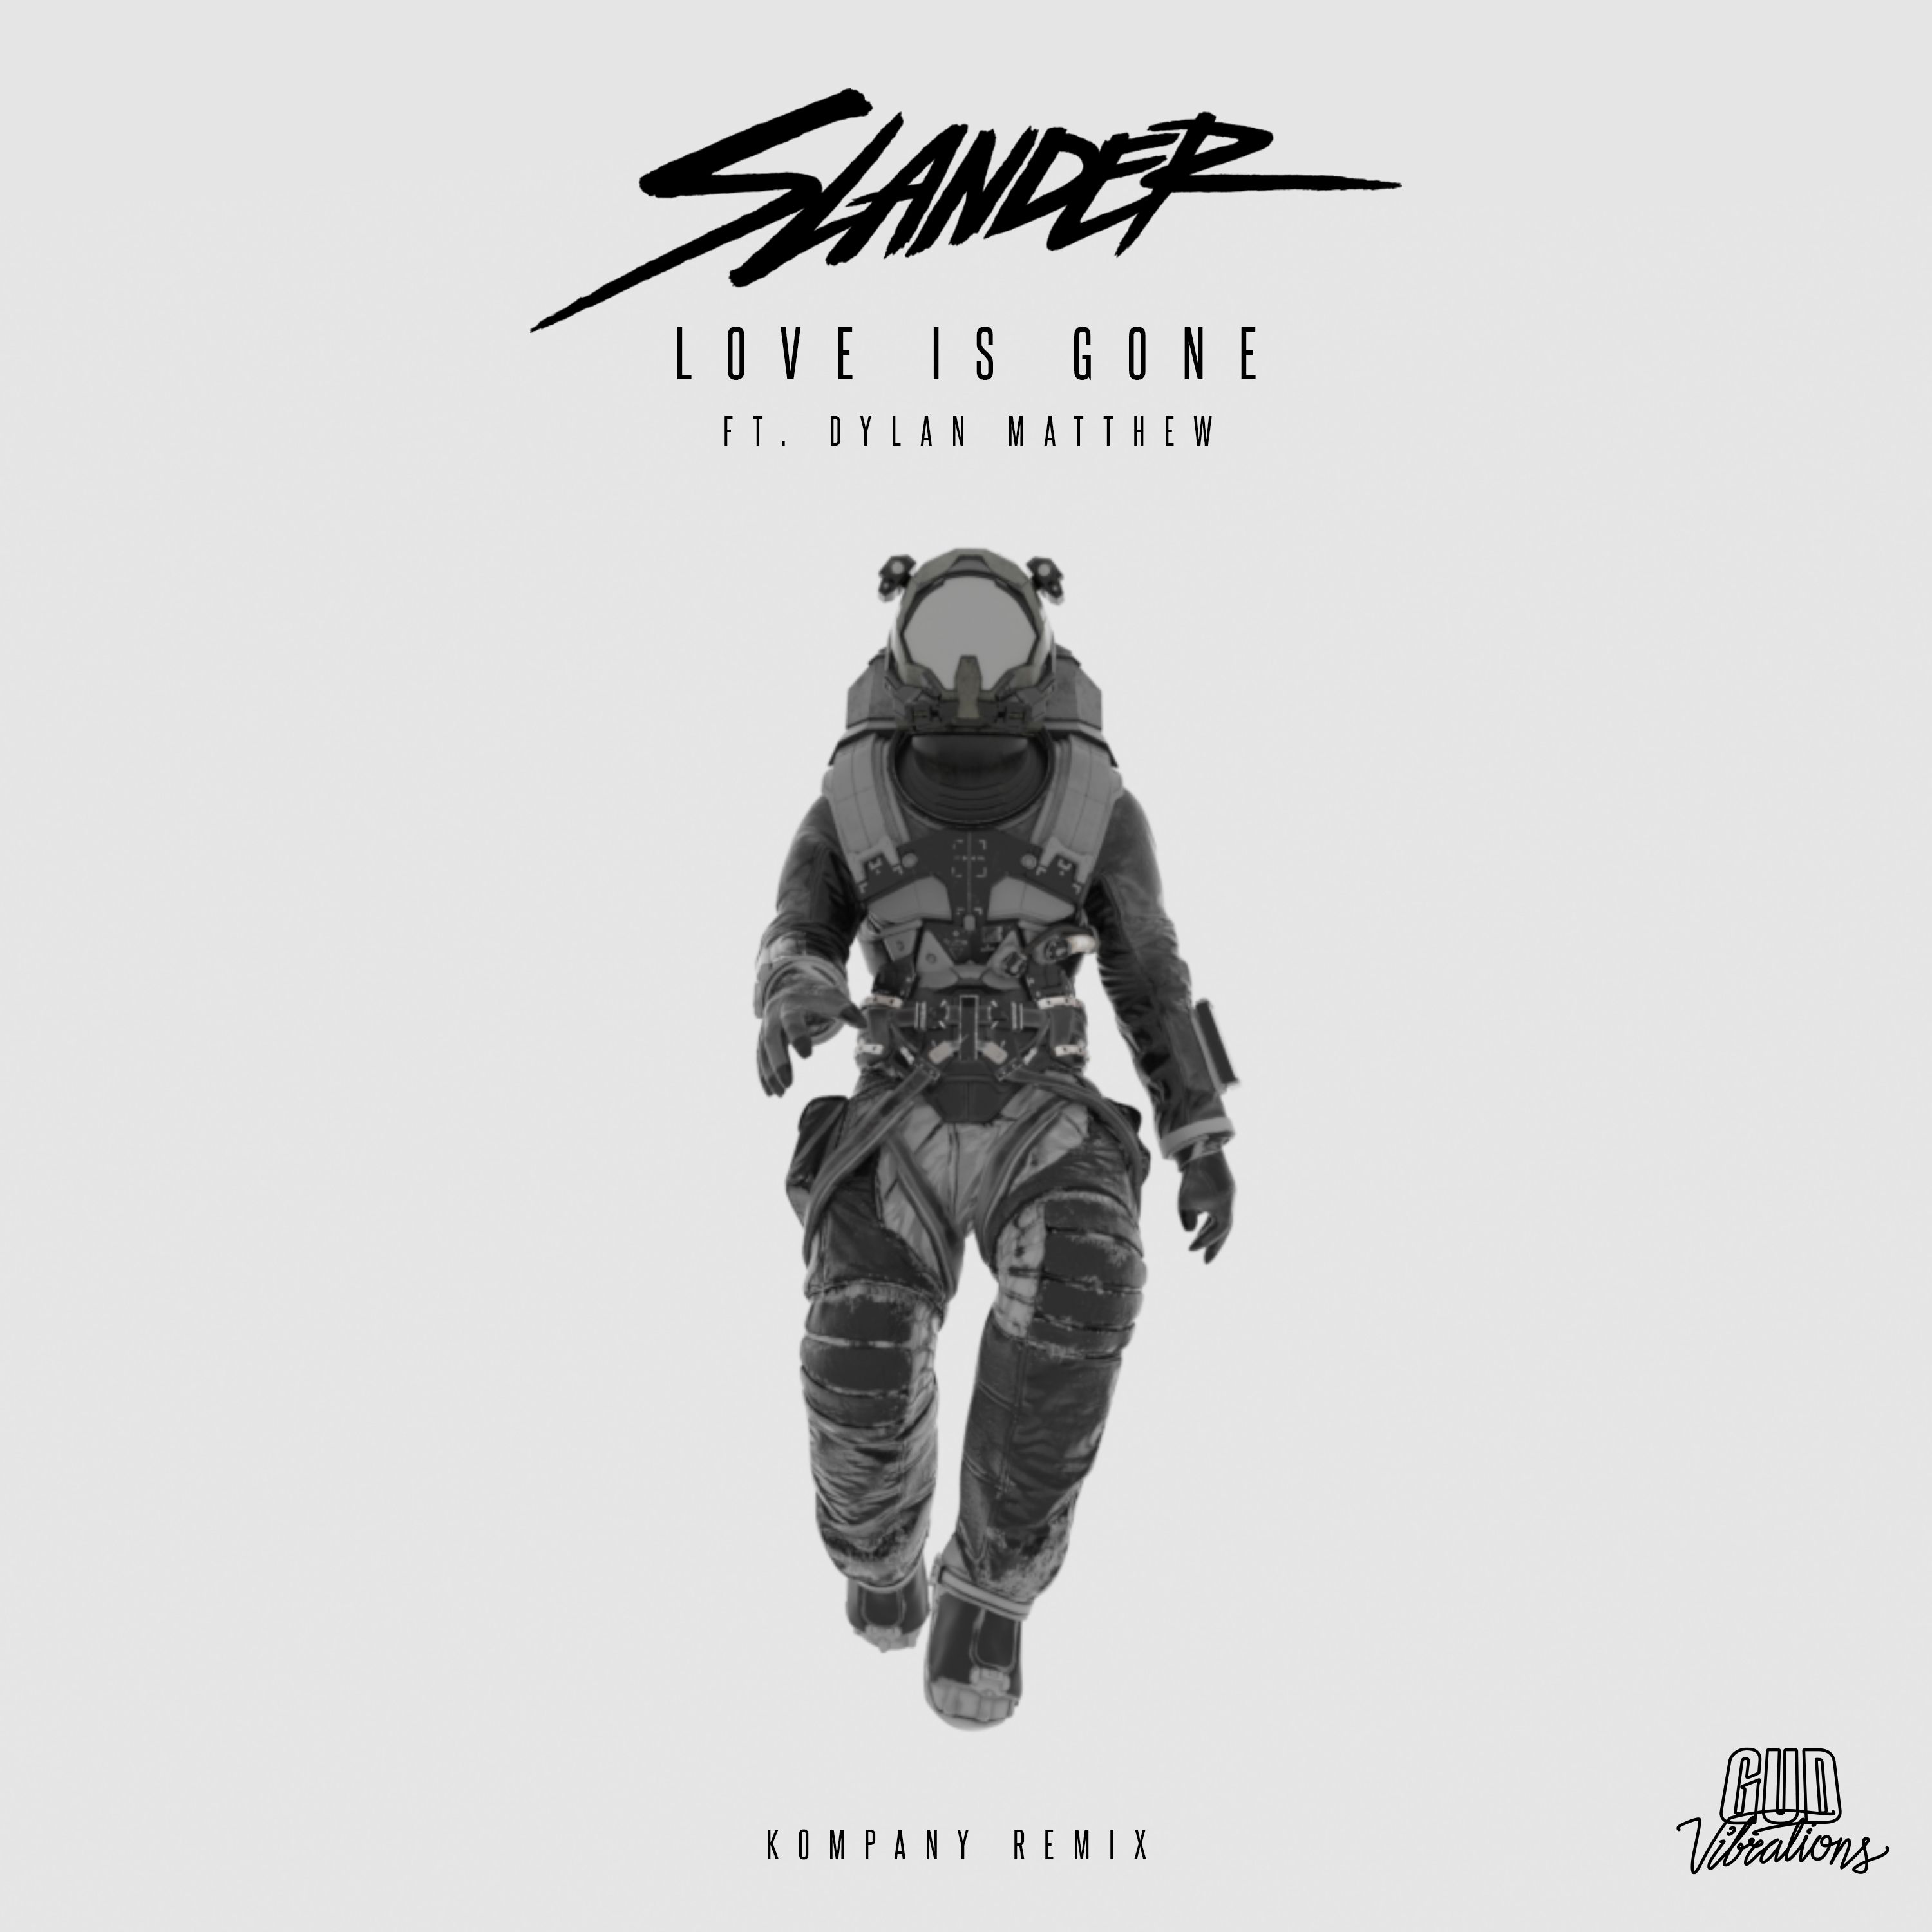 Download SLANDER - Love Is Gone (feat. Dylan Matthew) [Kompany Remix]